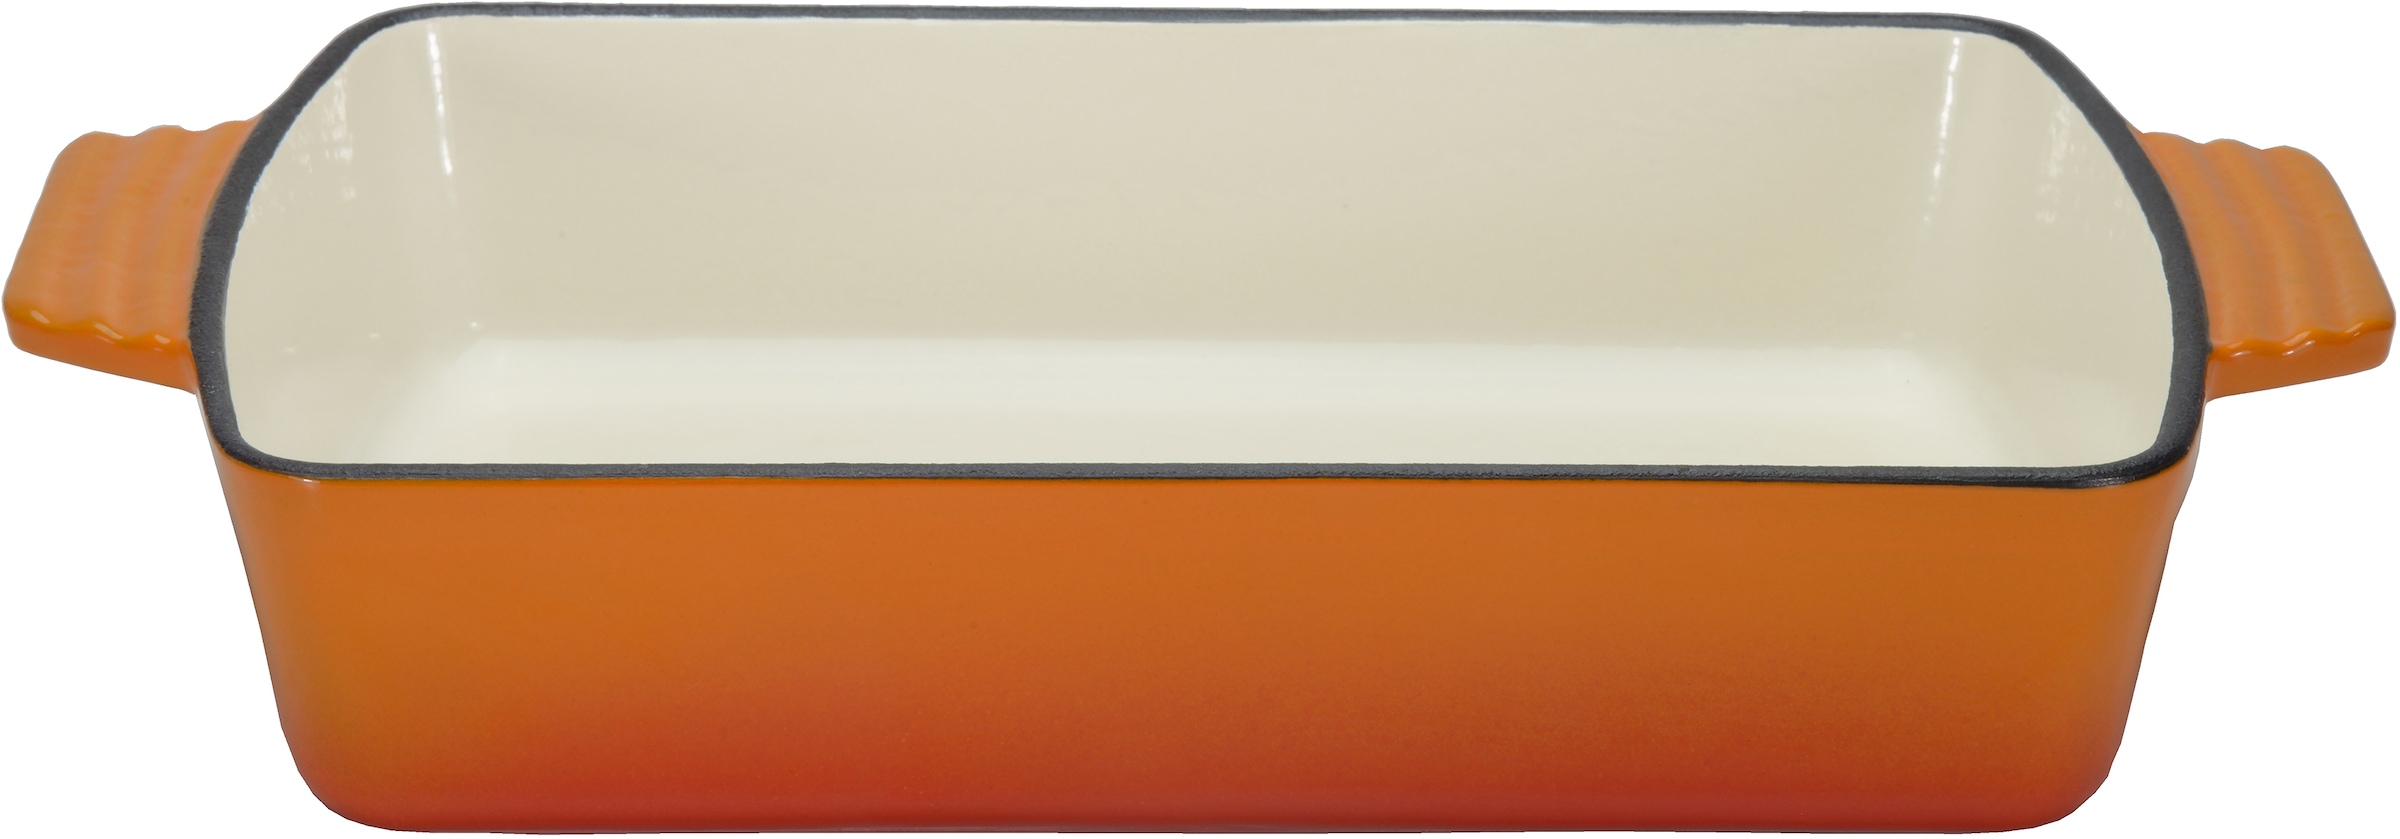 GSW Auflaufform »Orange Shadow«, Gusseisen, 3,8 Liter, für gleichmäßige Wärmeverteilung und -speicherung